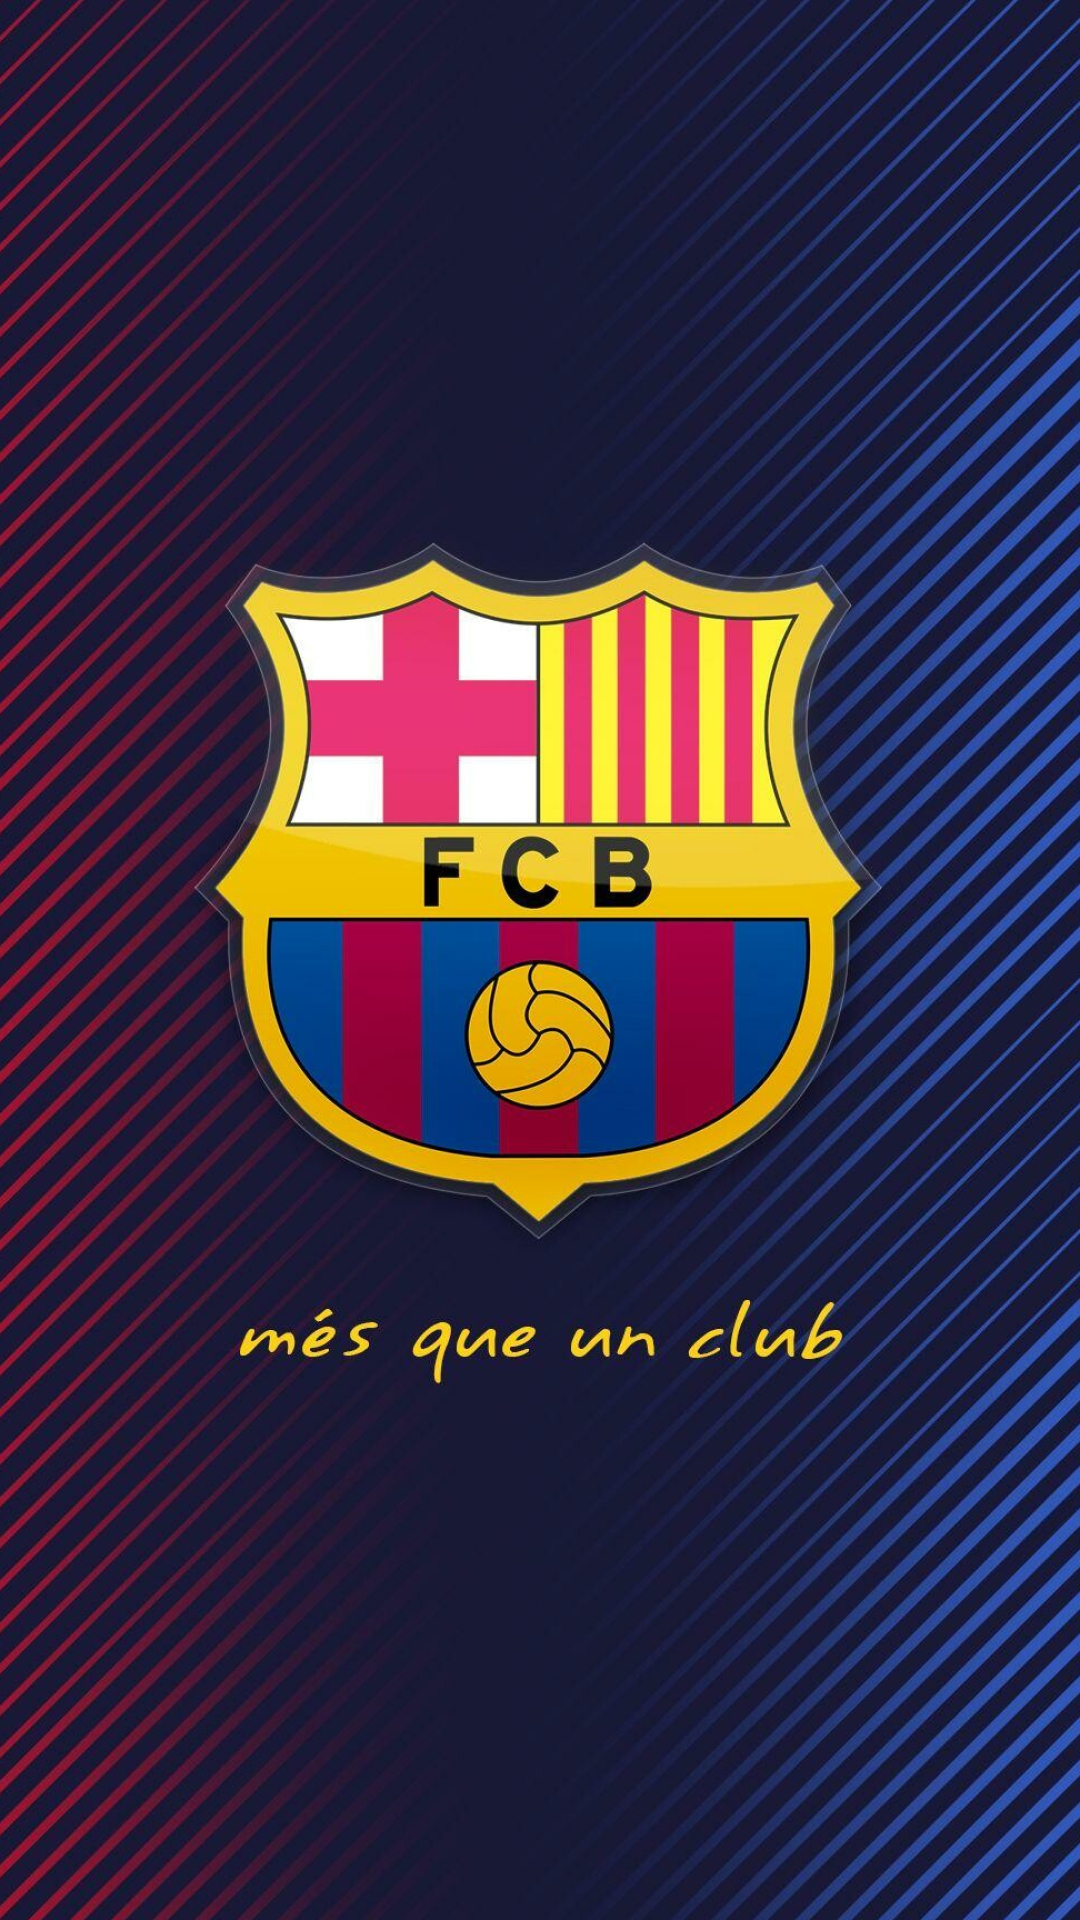 FC Barcelona: The record holder, 11 Supercopa de Espana, 3 Copa Eva Duarte and 2 Copa de la Liga trophies. 1080x1920 Full HD Background.